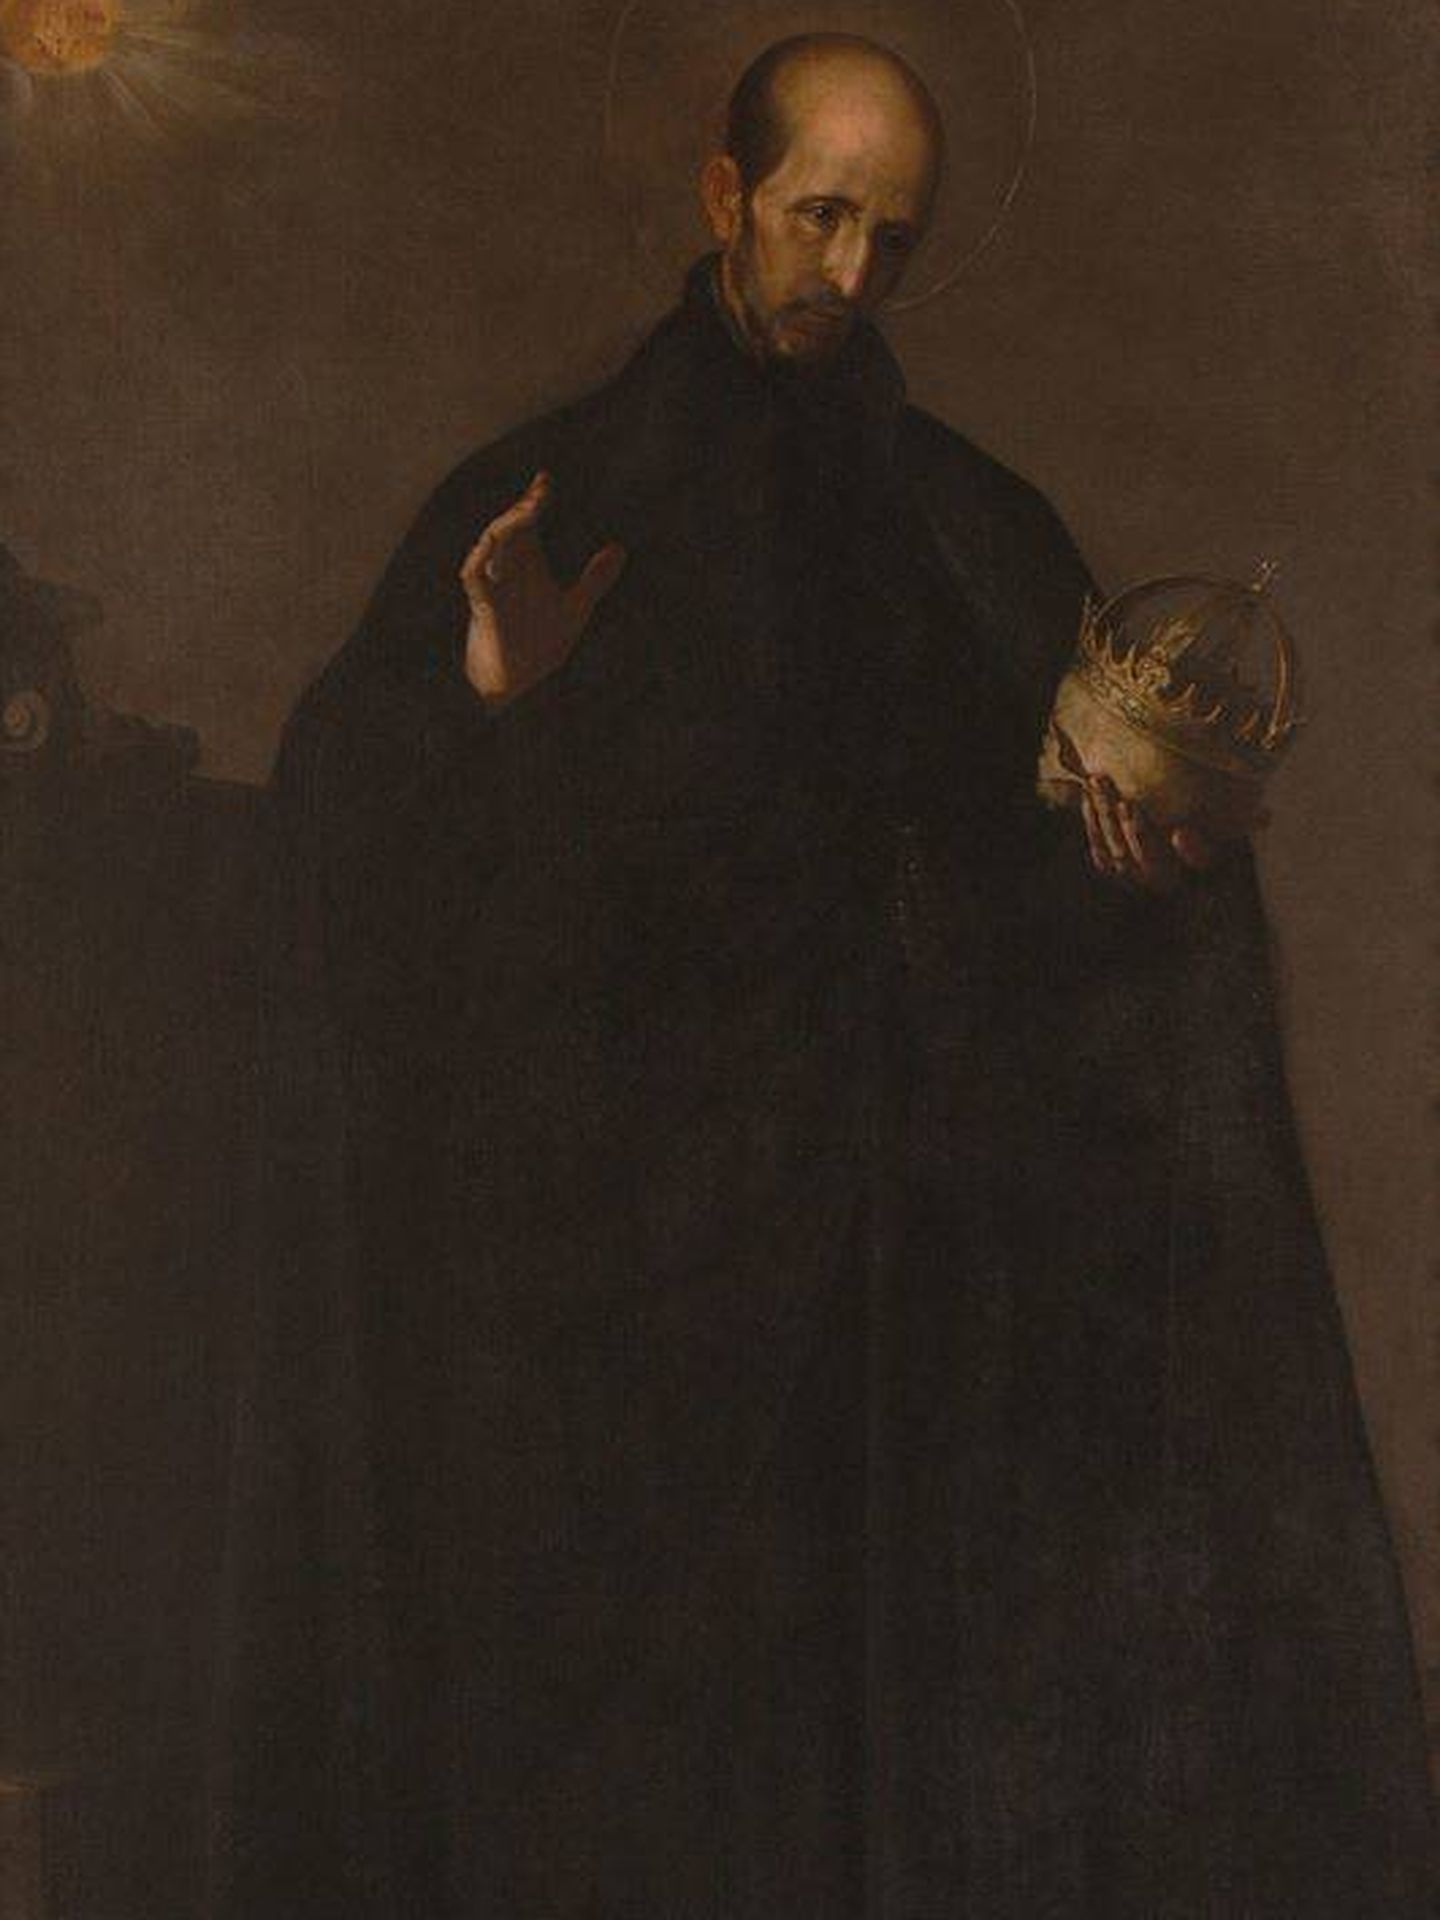 Lienzo de Alonso Cano representando a San Francisco de Borja, duque de Gandía y general de la Compañía de Jesús. (C.C.)